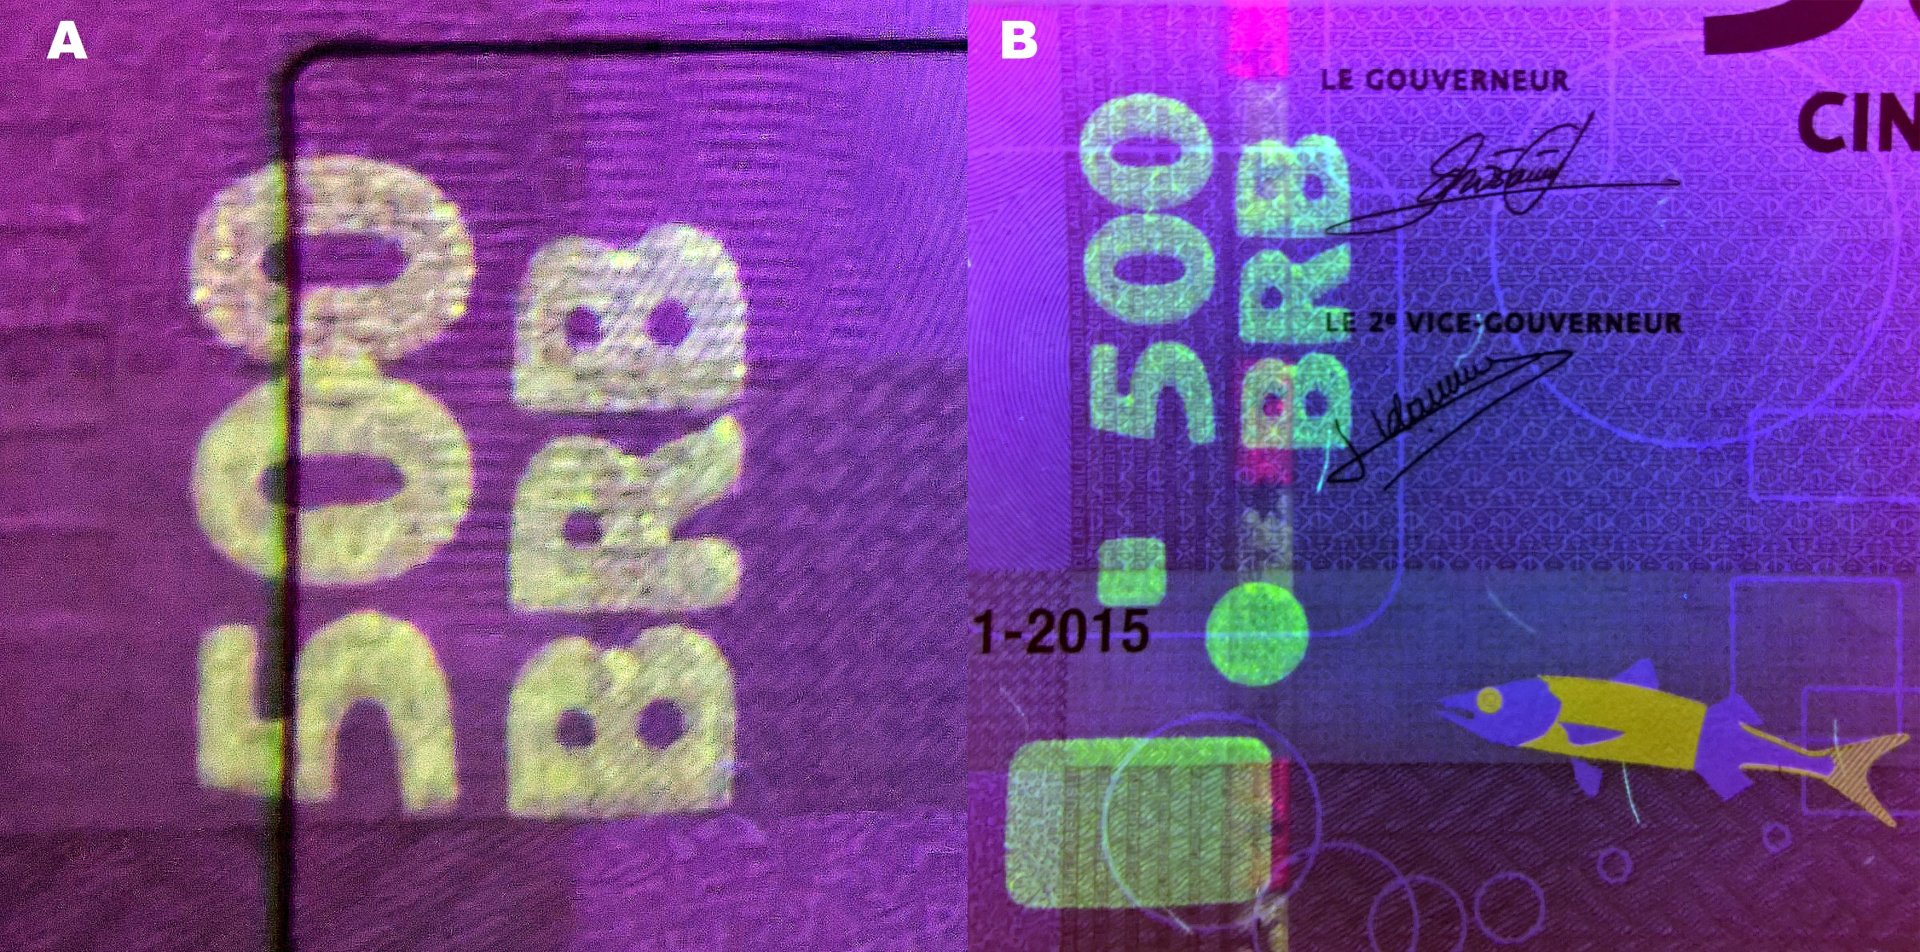 6 A) UV pole v levém panelu reverzu B) UV pole podél levého okraje pravého panelu reverzu, bezpečnostní proužek a kolorizovaná soutisková značka.